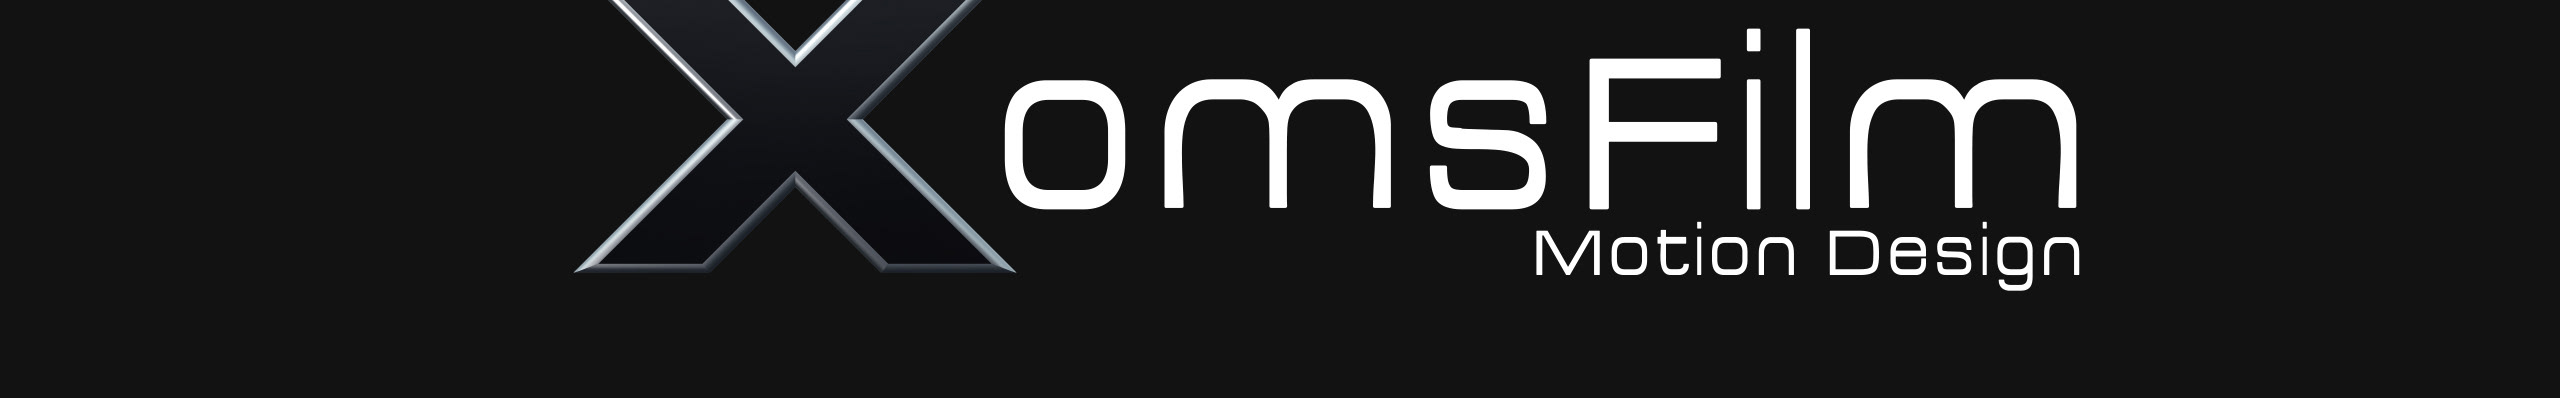 XomsFilm TV's profile banner